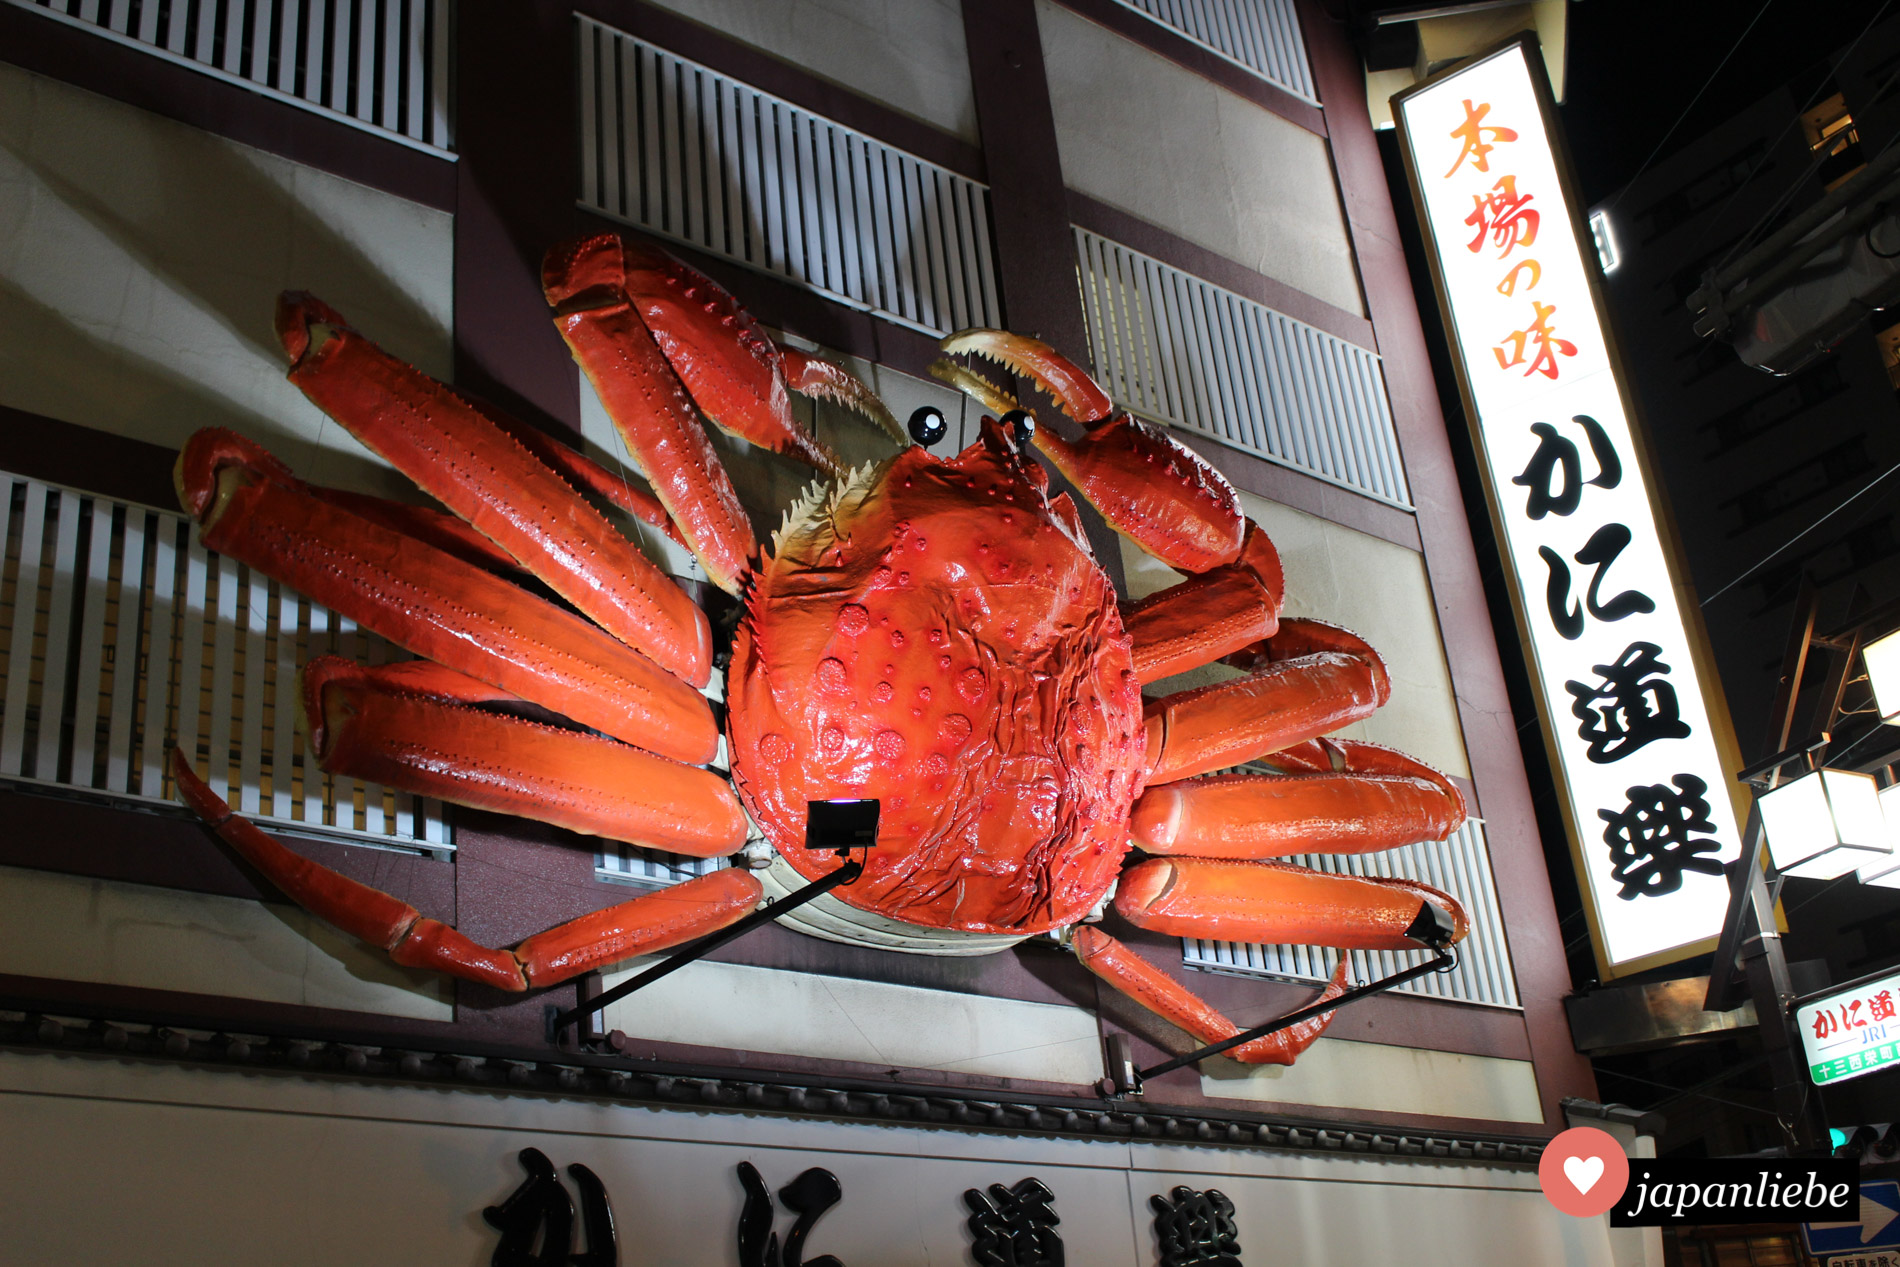 Weltberühmt sind die sich bewegenden Krabben-Displays der Kani Doraku Restaurantkette.